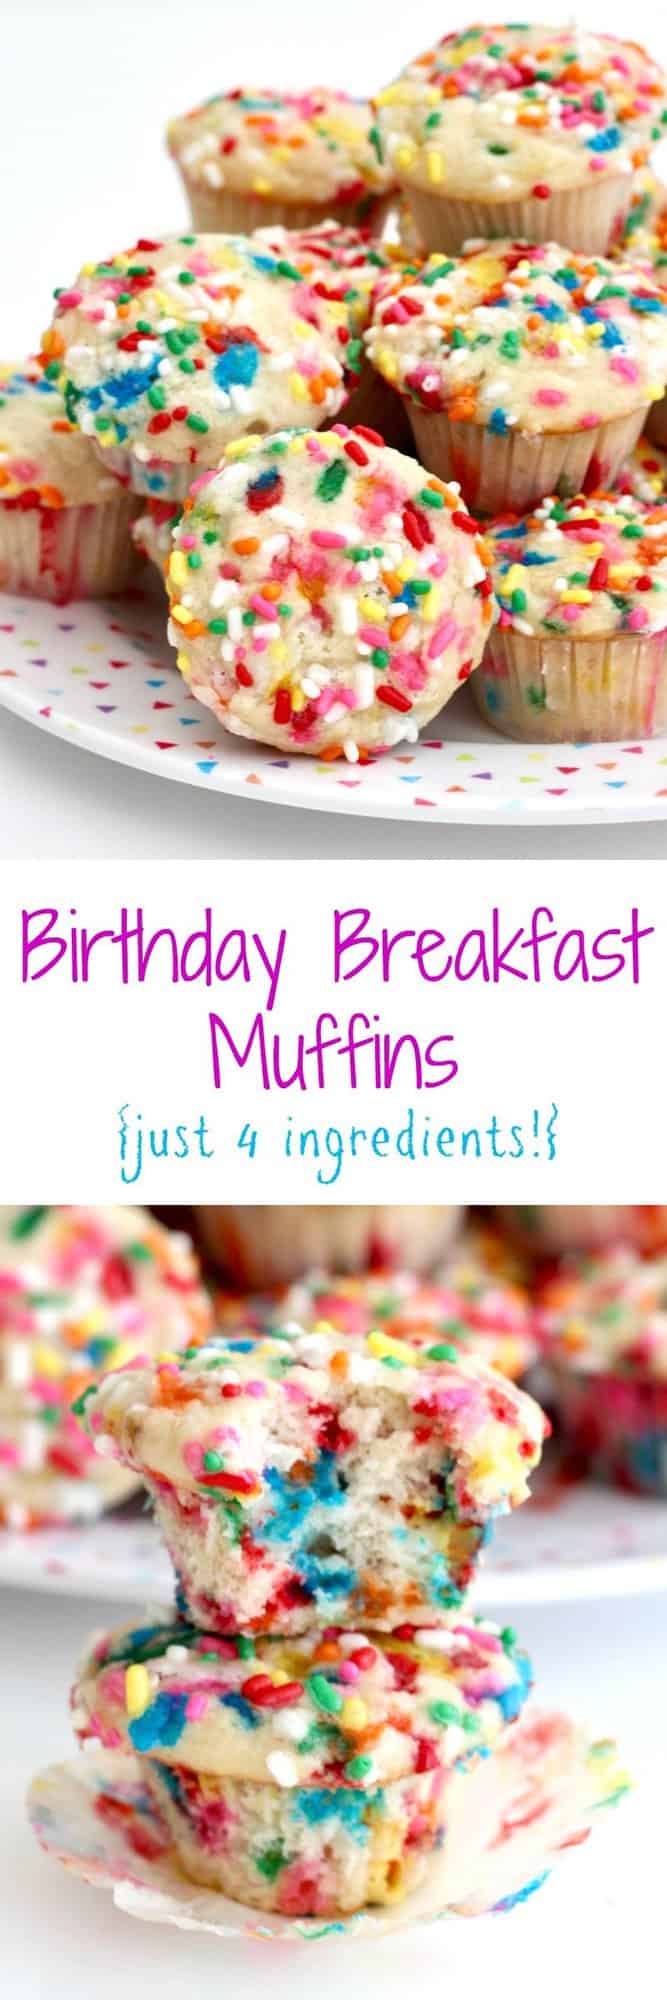 Birthday Breakfast Muffins